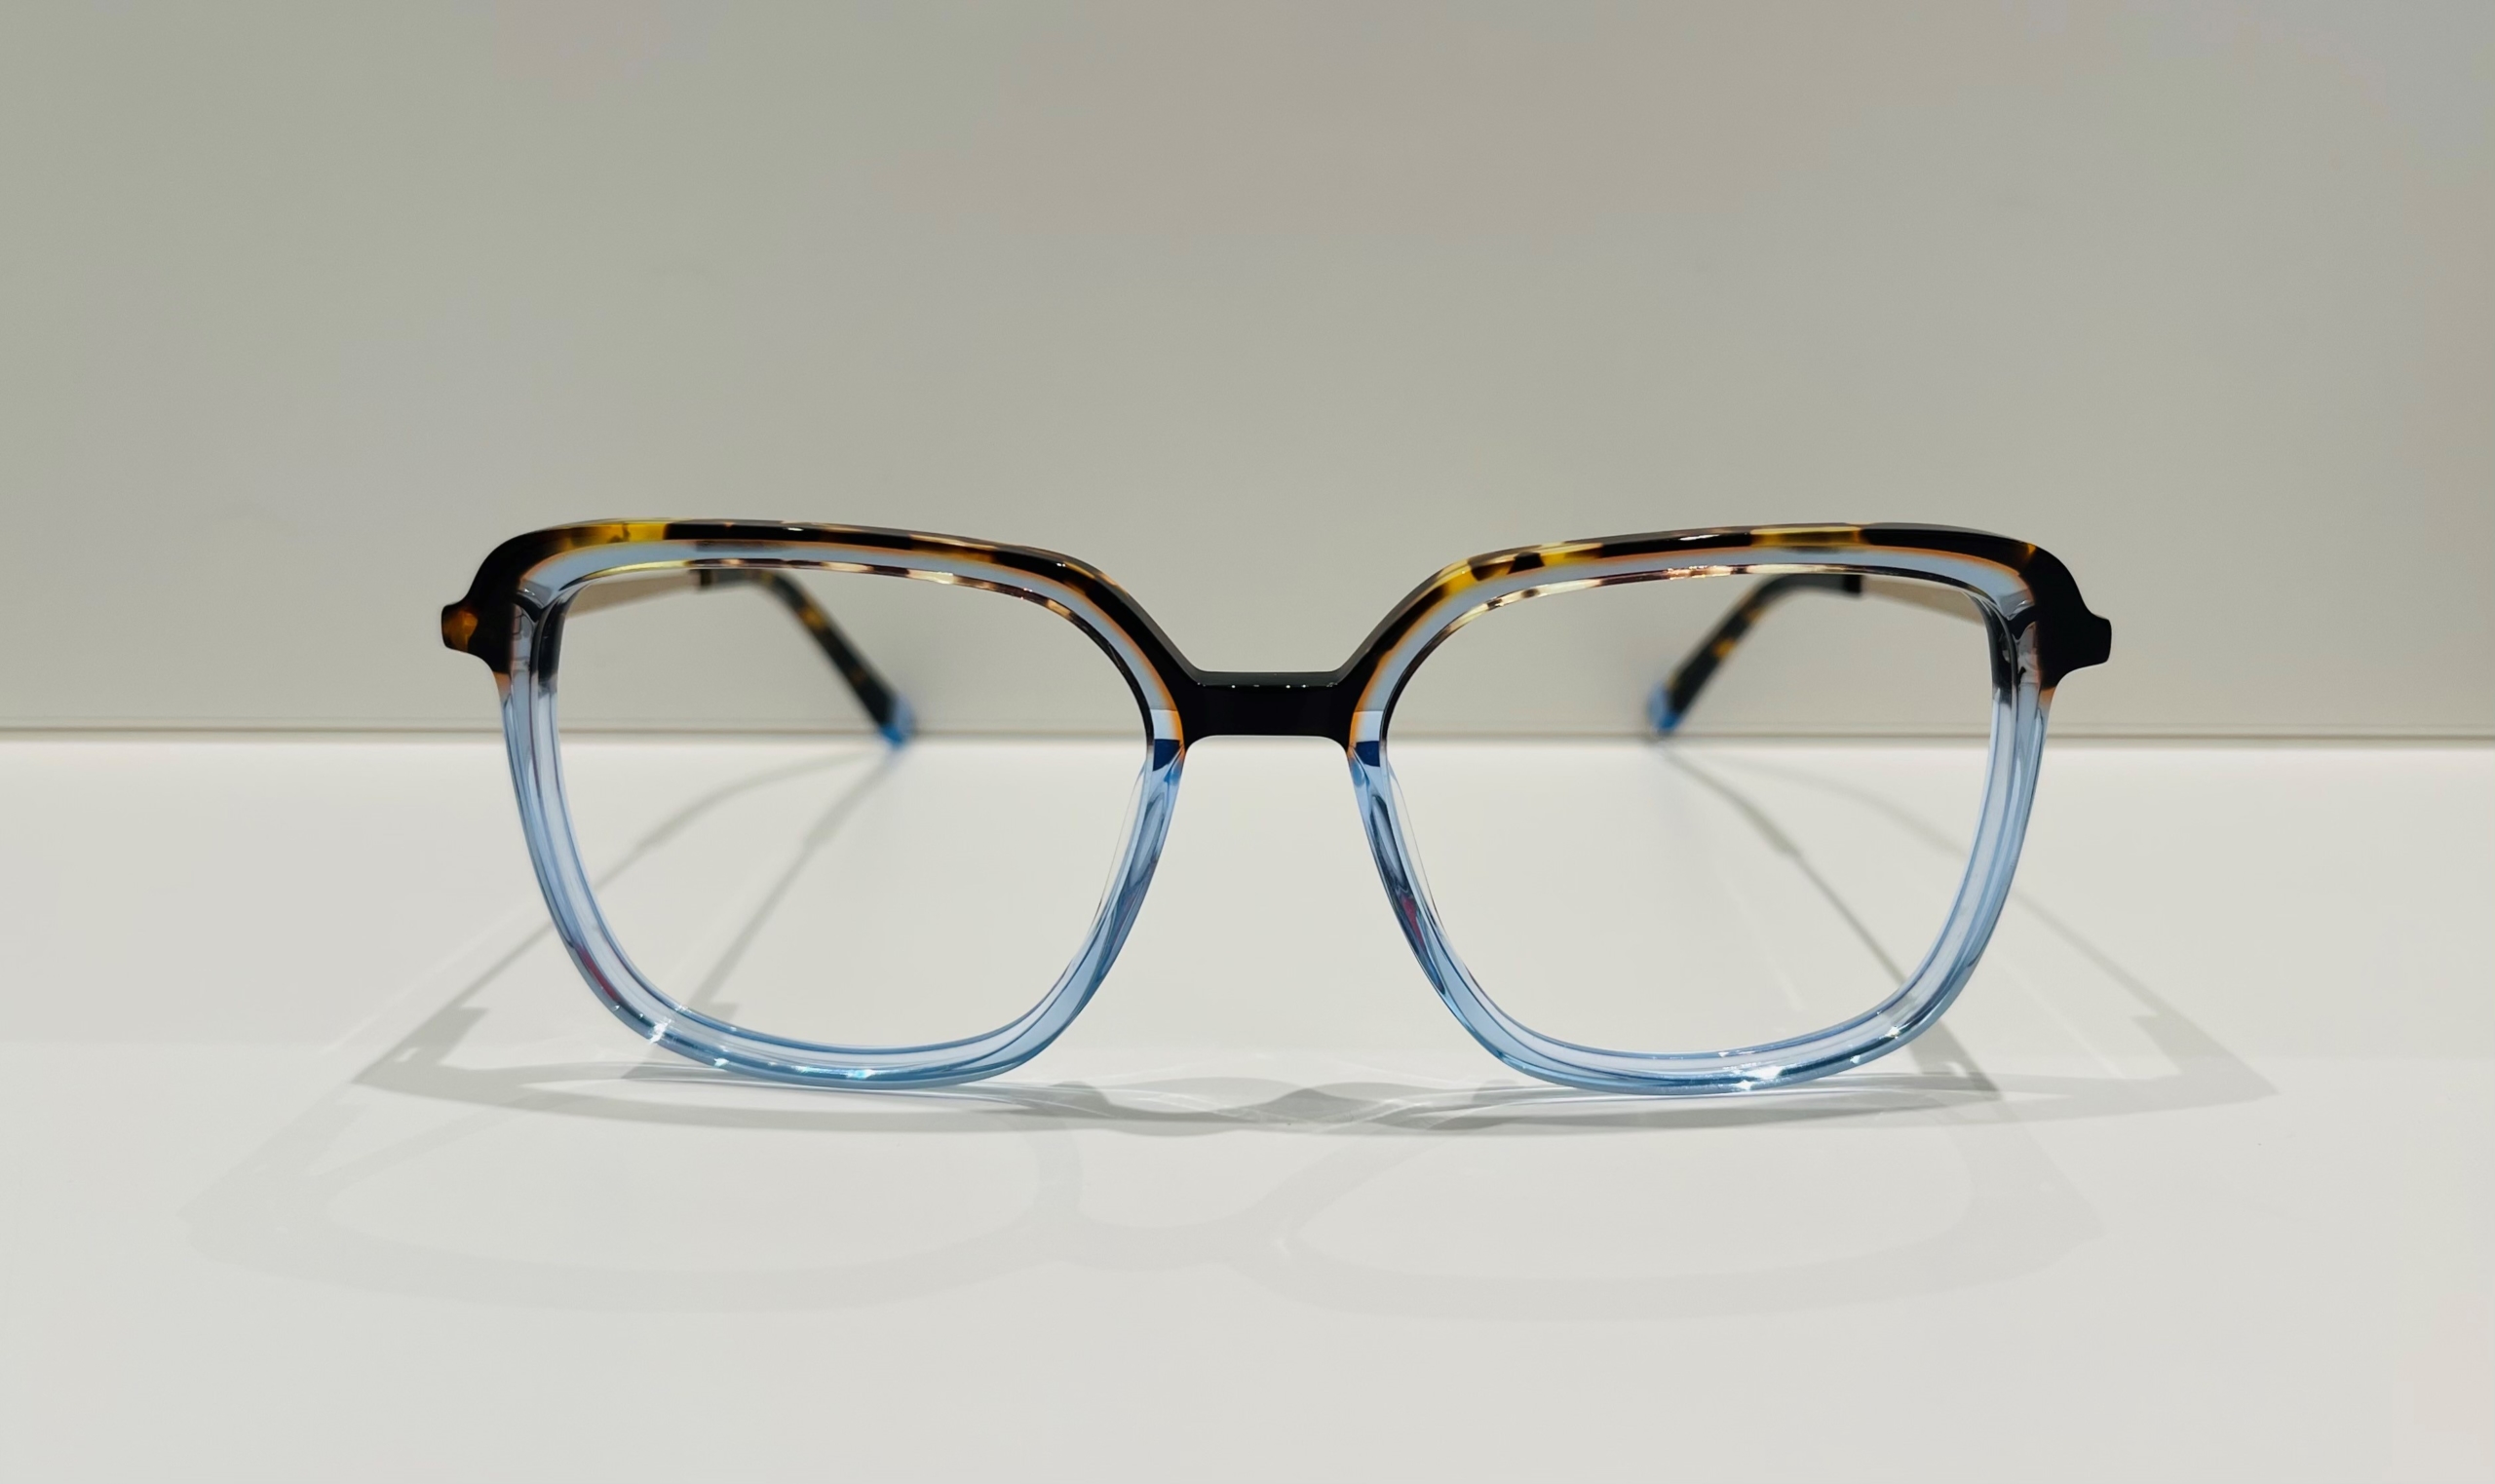 Komplettbrille für Damen - €150. Gültig bis und mit 30. Nov 2021!